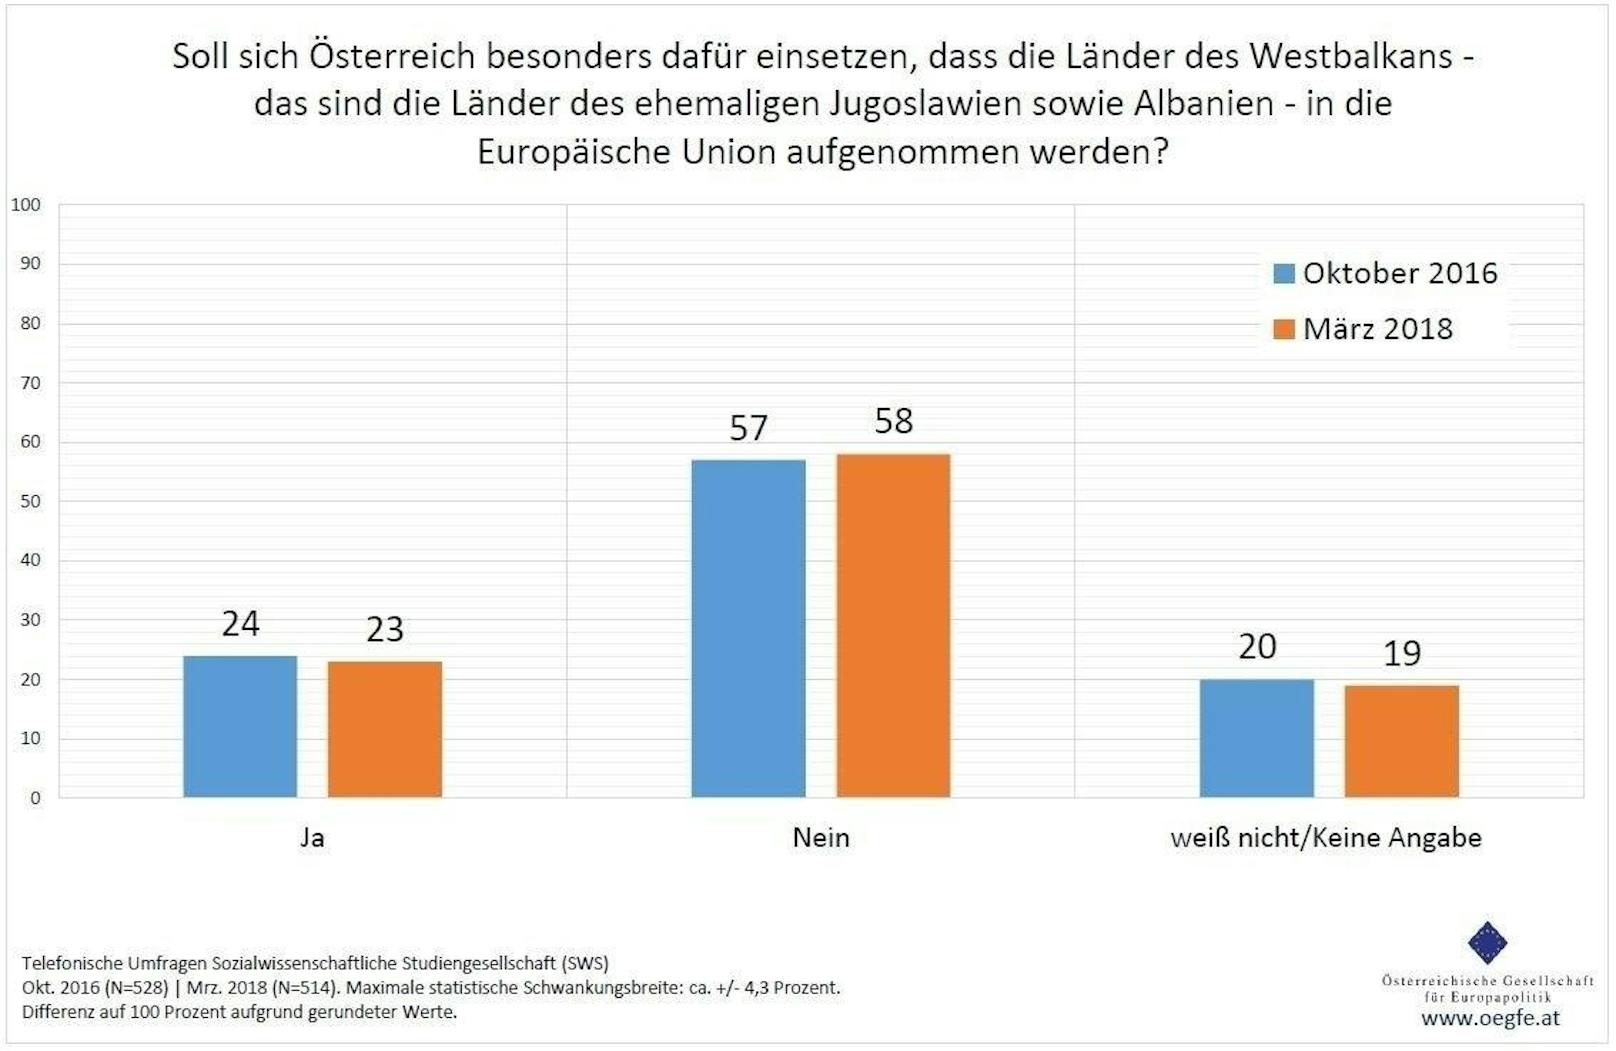 Nur ein knappes Viertel (23 Prozent) der Befragten möchte, dass Österreich als Motor für eine Aufnahme der Westbalkan-Länder in die EU auftritt. Knapp sechs von zehn Befragten (58 Prozent) halten das nicht für notwendig, während ein Fünftel in dieser Frage keine Stellungnahme abgeben kann (19 Prozent).